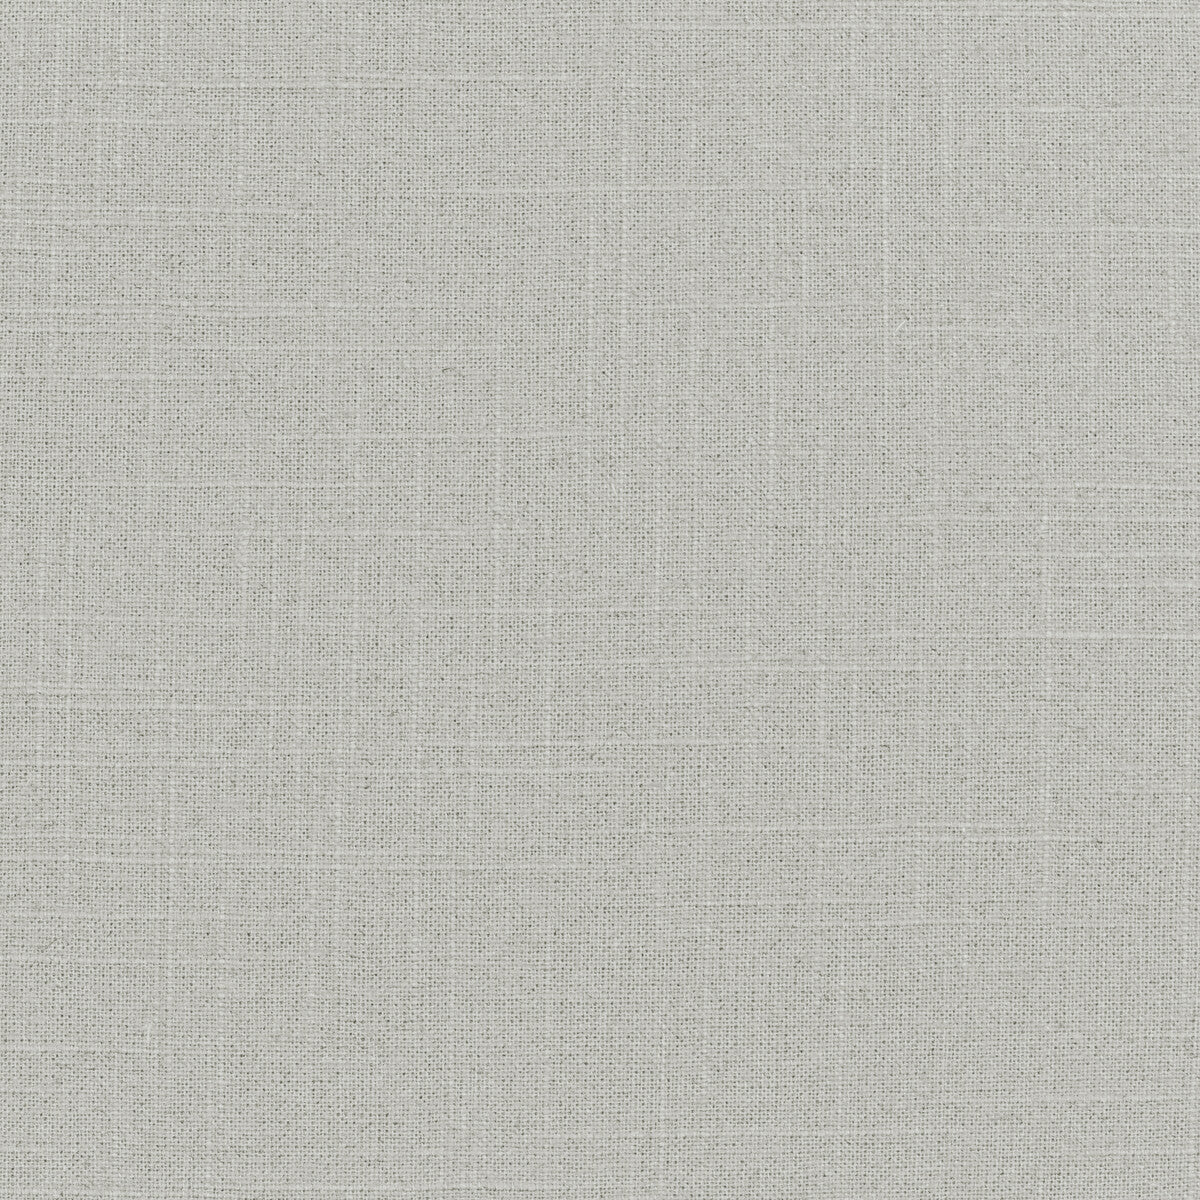 Kravet Basics fabric in 30808-1100 color - pattern 30808.1100.0 - by Kravet Basics